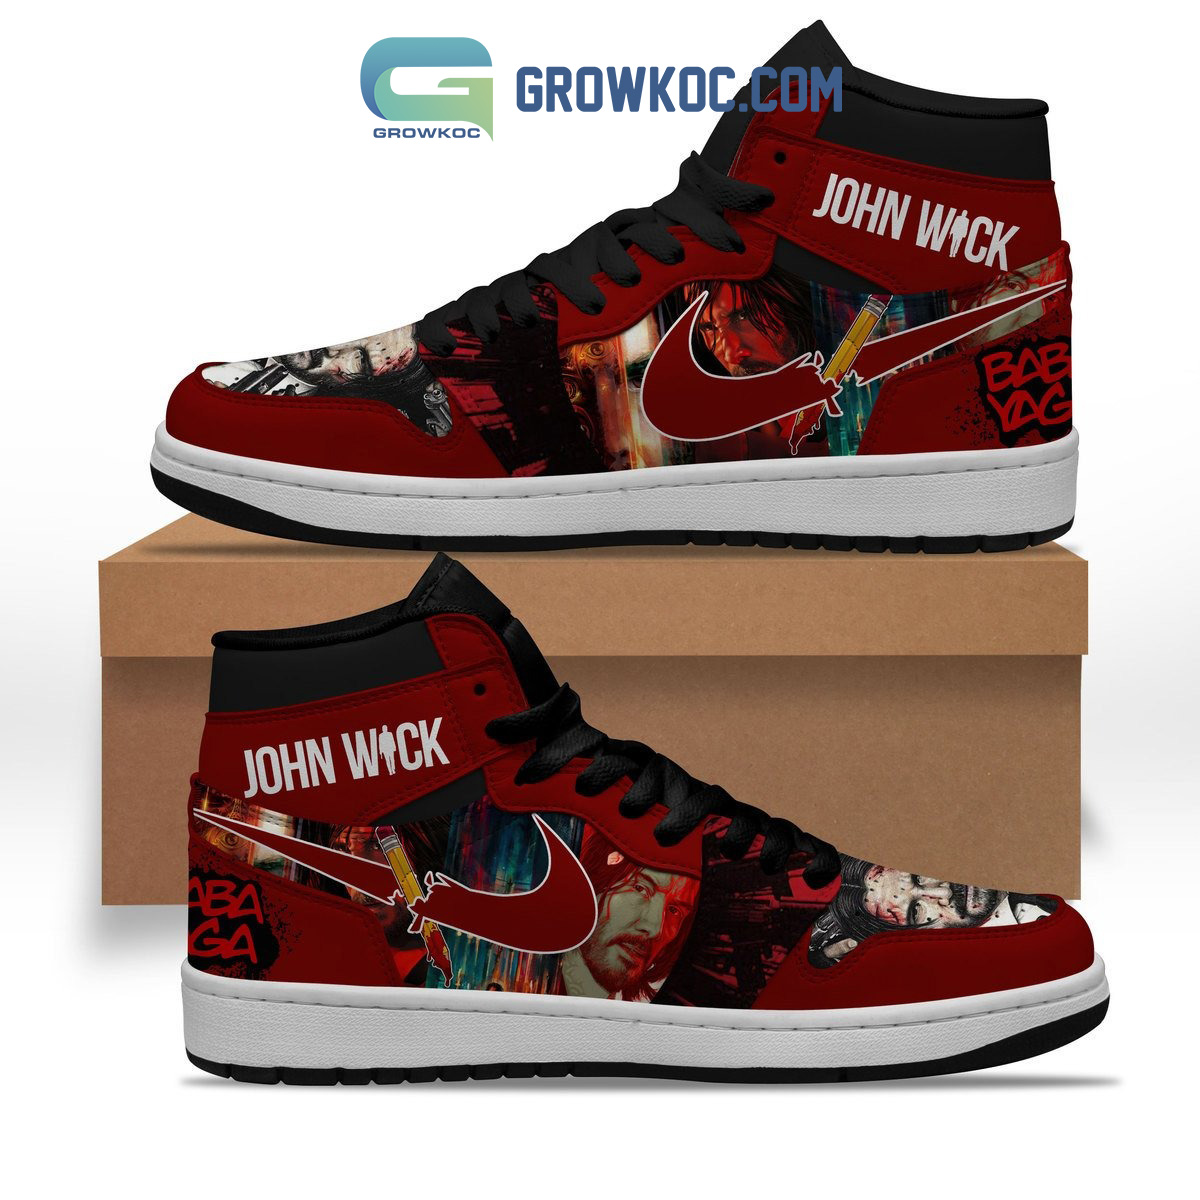 John Wick Baba Yaga Air Jordan 1 Shoes - Growkoc